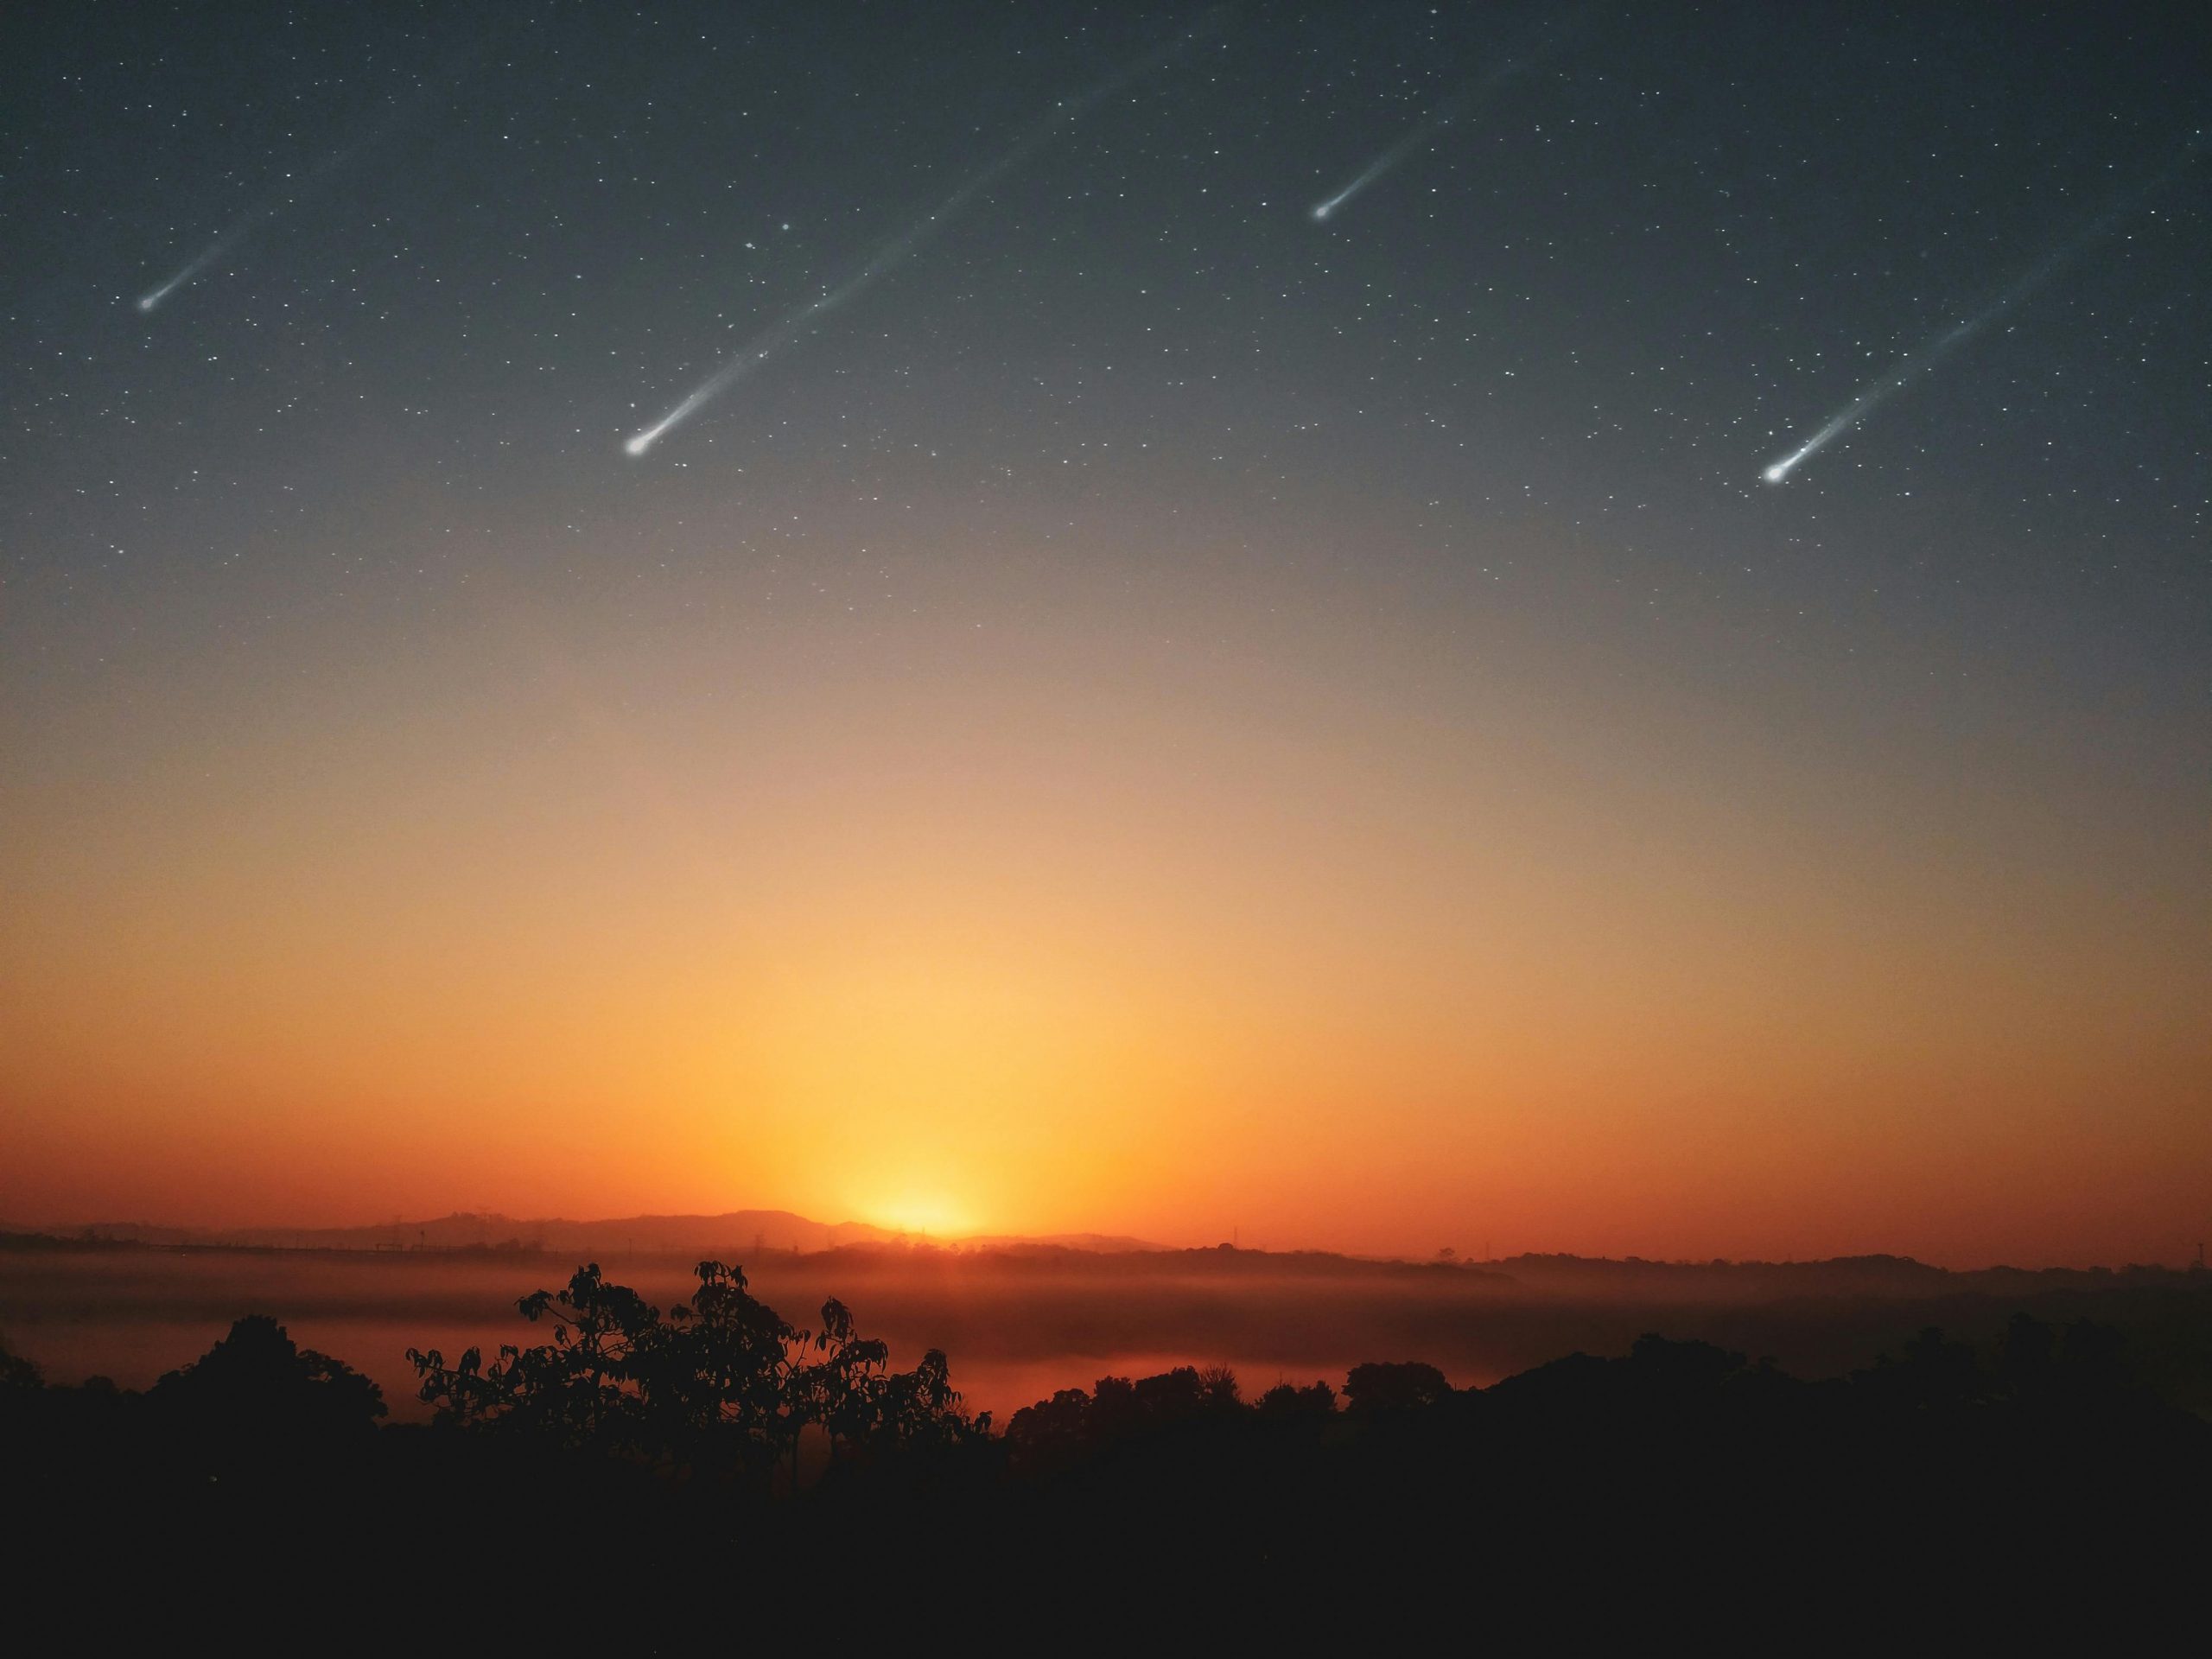 Se espera que se produzca una de las lluvias de meteoritos más fuertes, con un número de meteoros que alcanzará los sesenta por hora.